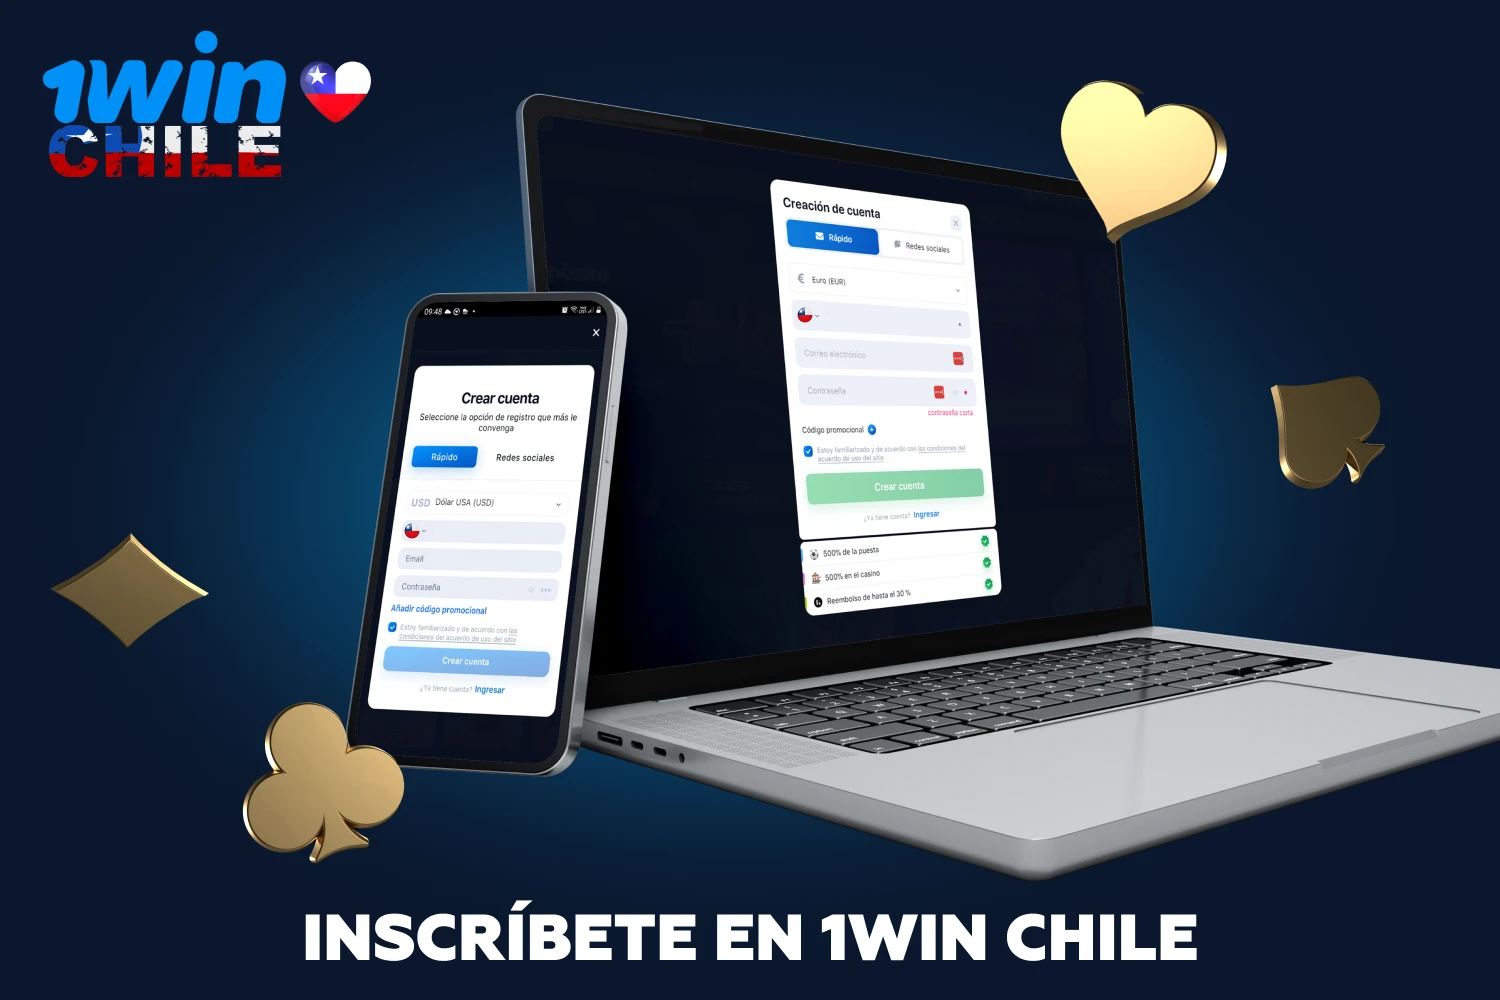 Tras registrarse en 1win, los chilenos podrán disfrutar de una amplia selección de eventos deportivos en los que apostar y de los mejores casinos en línea entre los que elegir